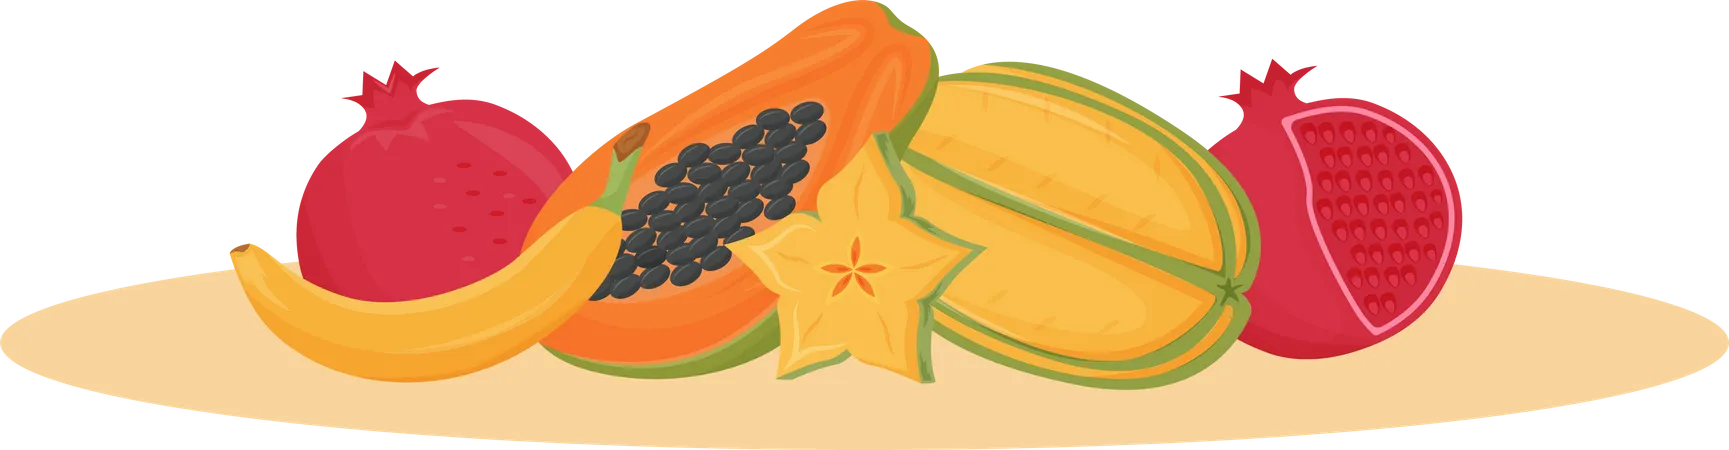 Frutas exoticas  Ilustración